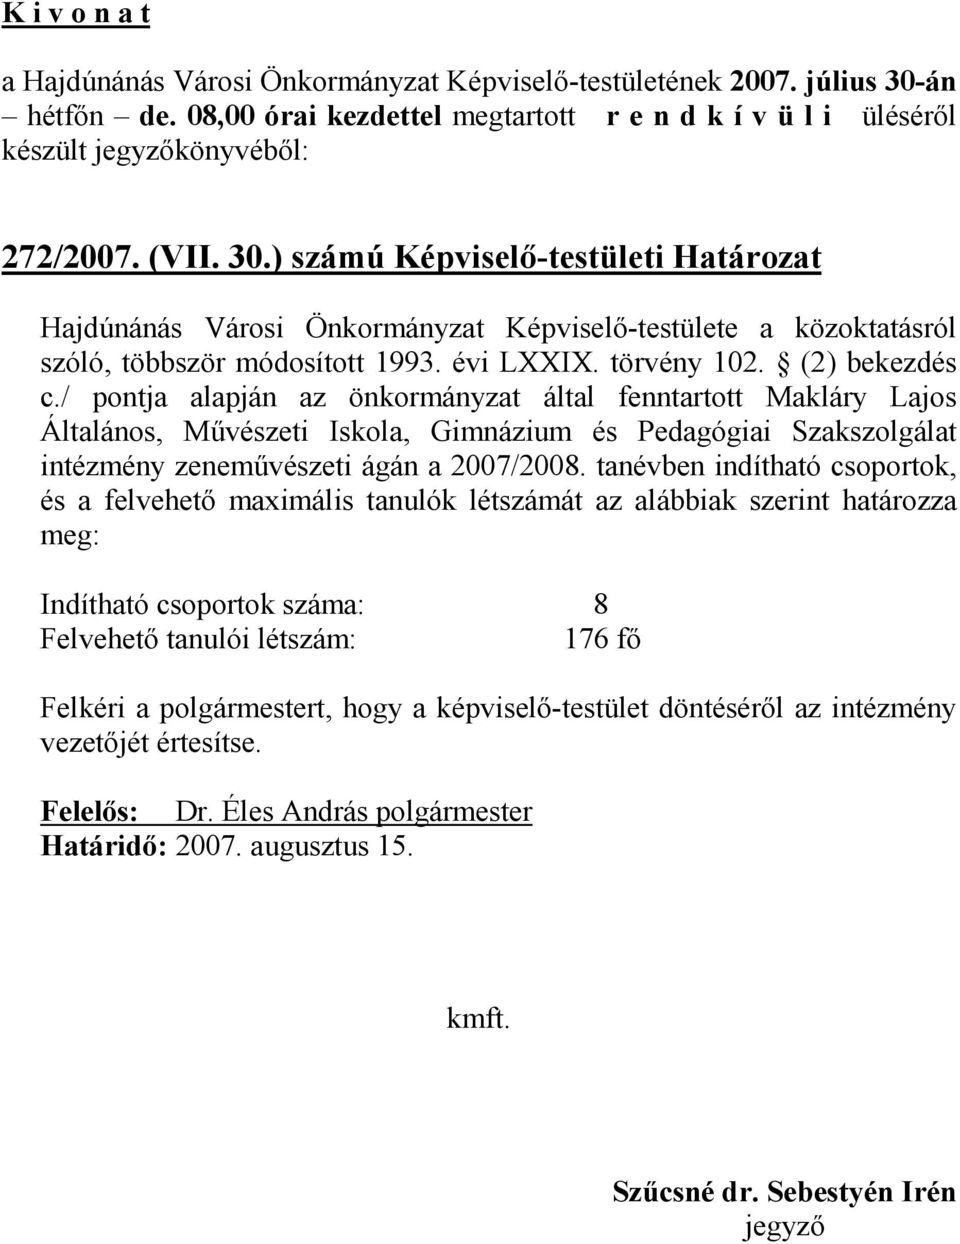 ) számú Képviselı-testületi Határozat Hajdúnánás Városi Önkormányzat Képviselı-testülete a közoktatásról szóló, többször módosított 1993. évi LXXIX. törvény 102. (2) bekezdés c.